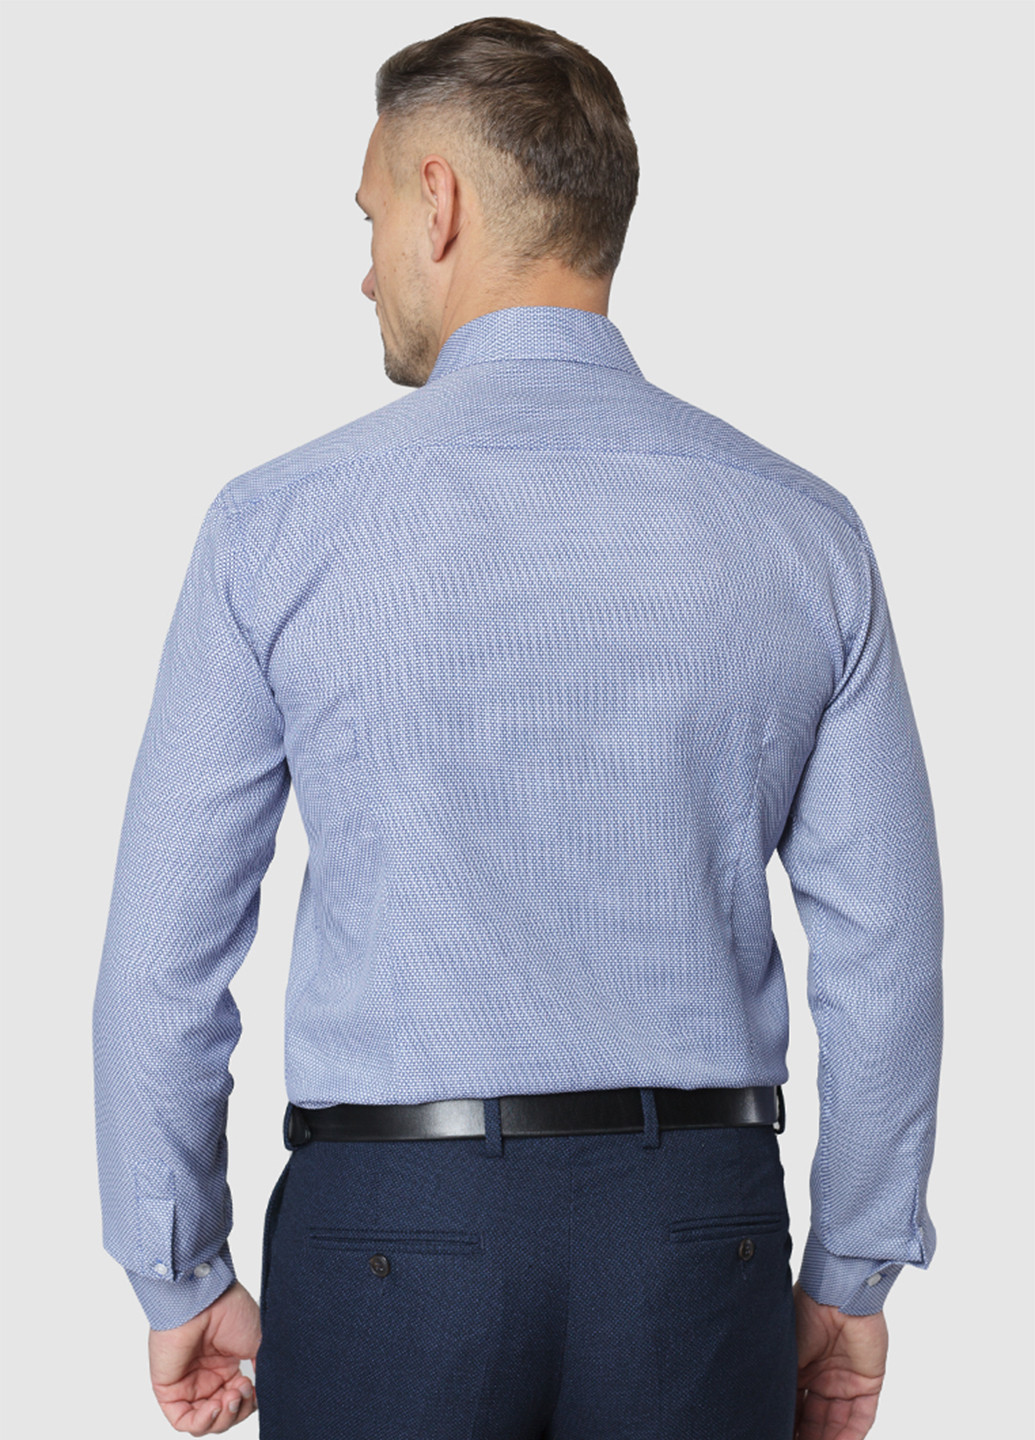 Светло-голубой классическая рубашка с геометрическим узором Arber